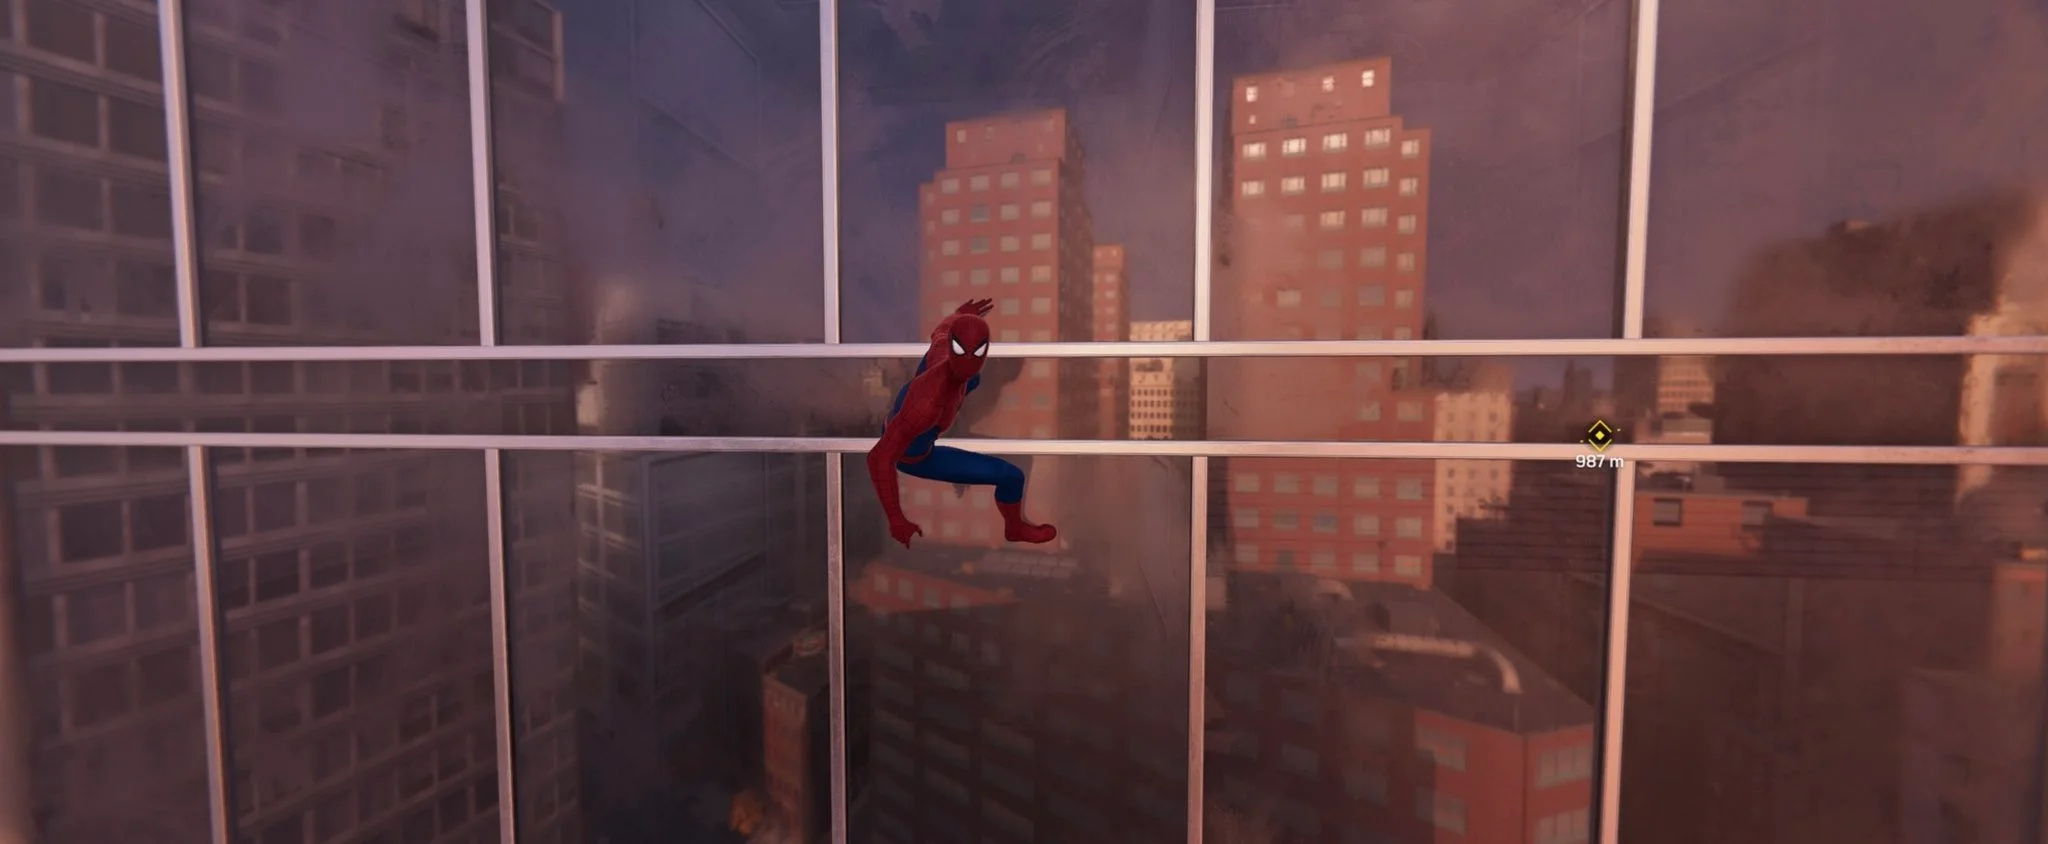 Утечка скриншотов Marvel’s Spider-Man показала игру на ПК ()